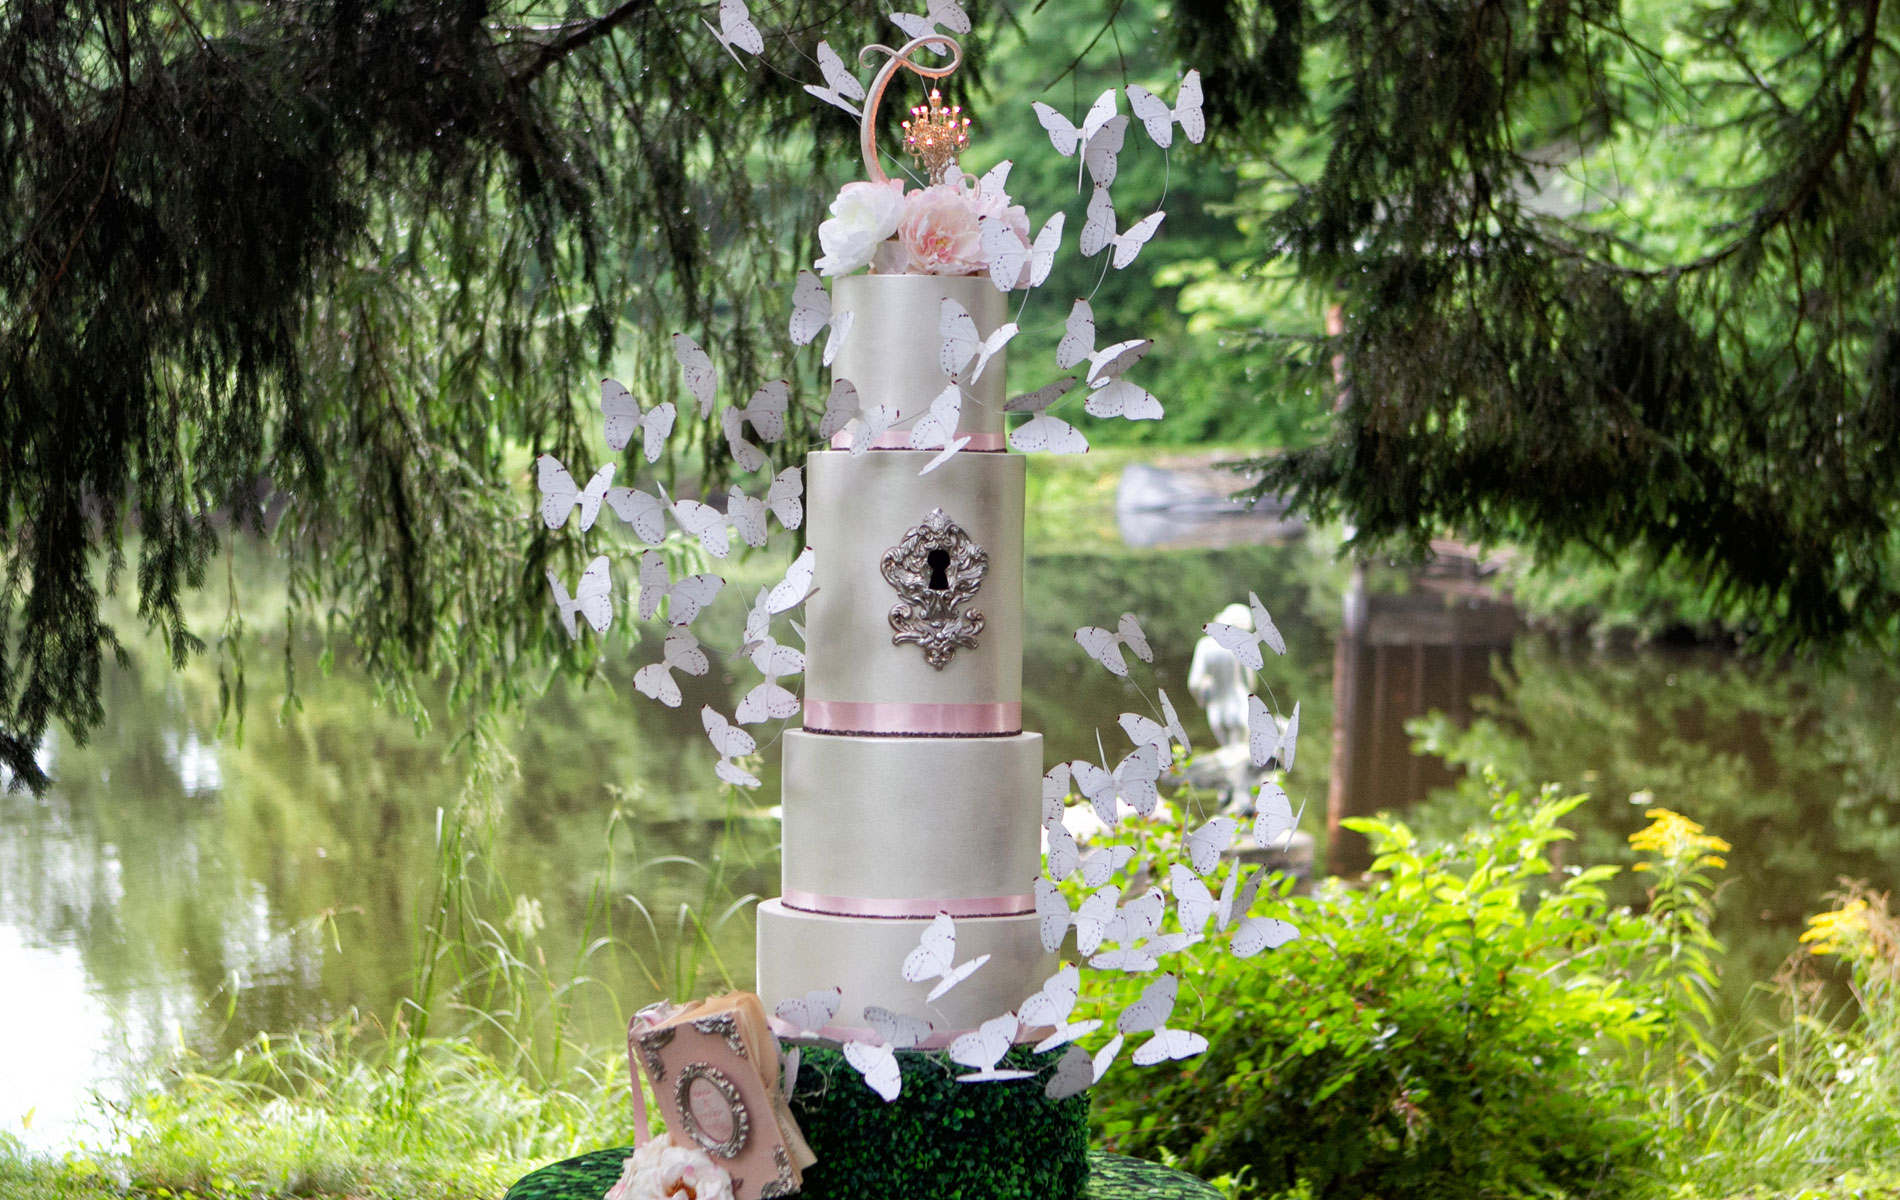 creative wedding cakes